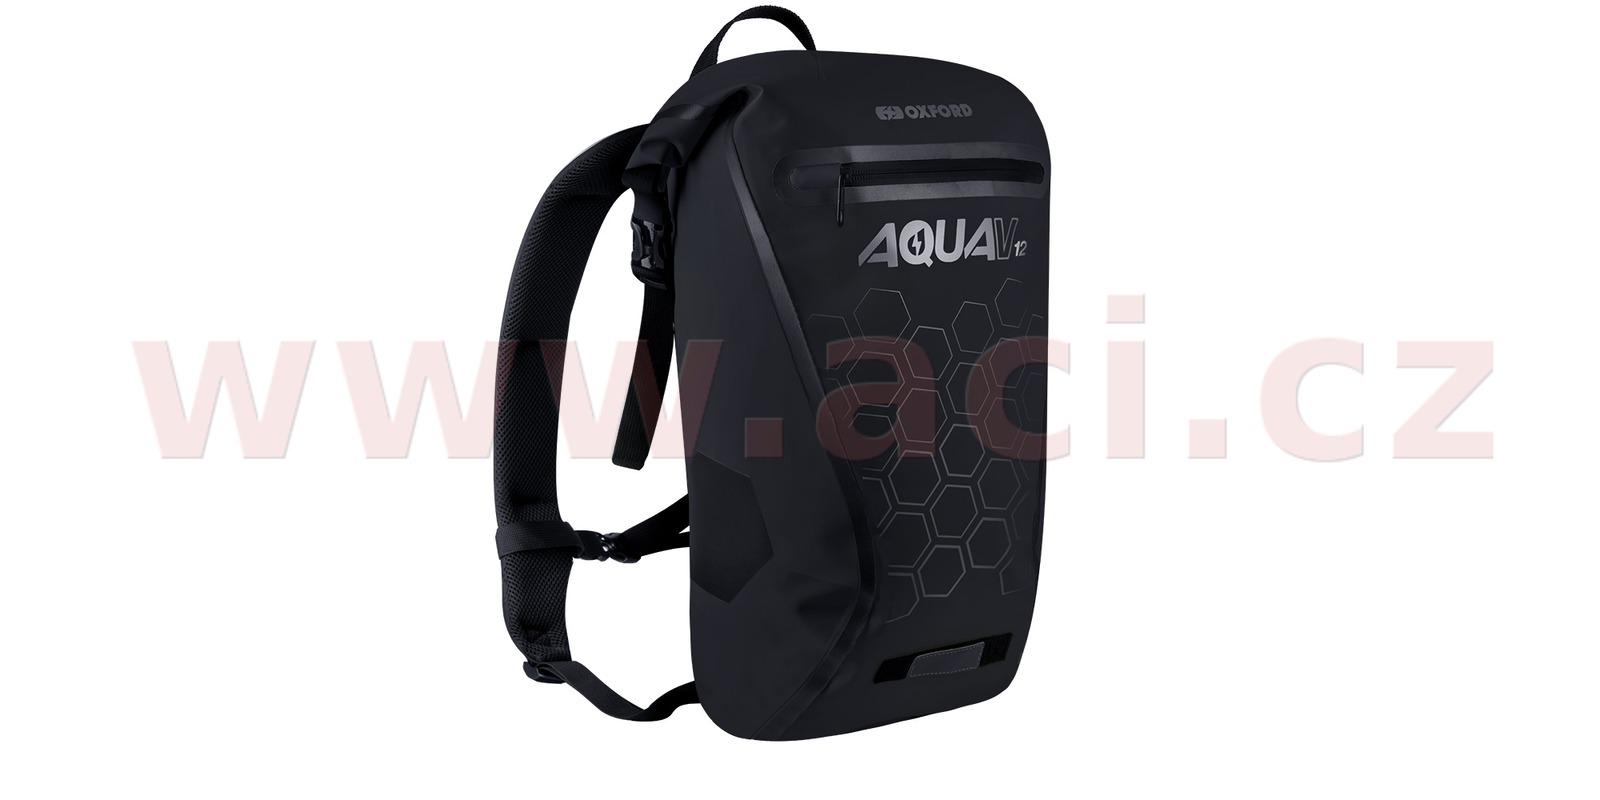 Obrázek produktu vodotěsný batoh AQUA V12, OXFORD (černá, objem 12 L) OL691